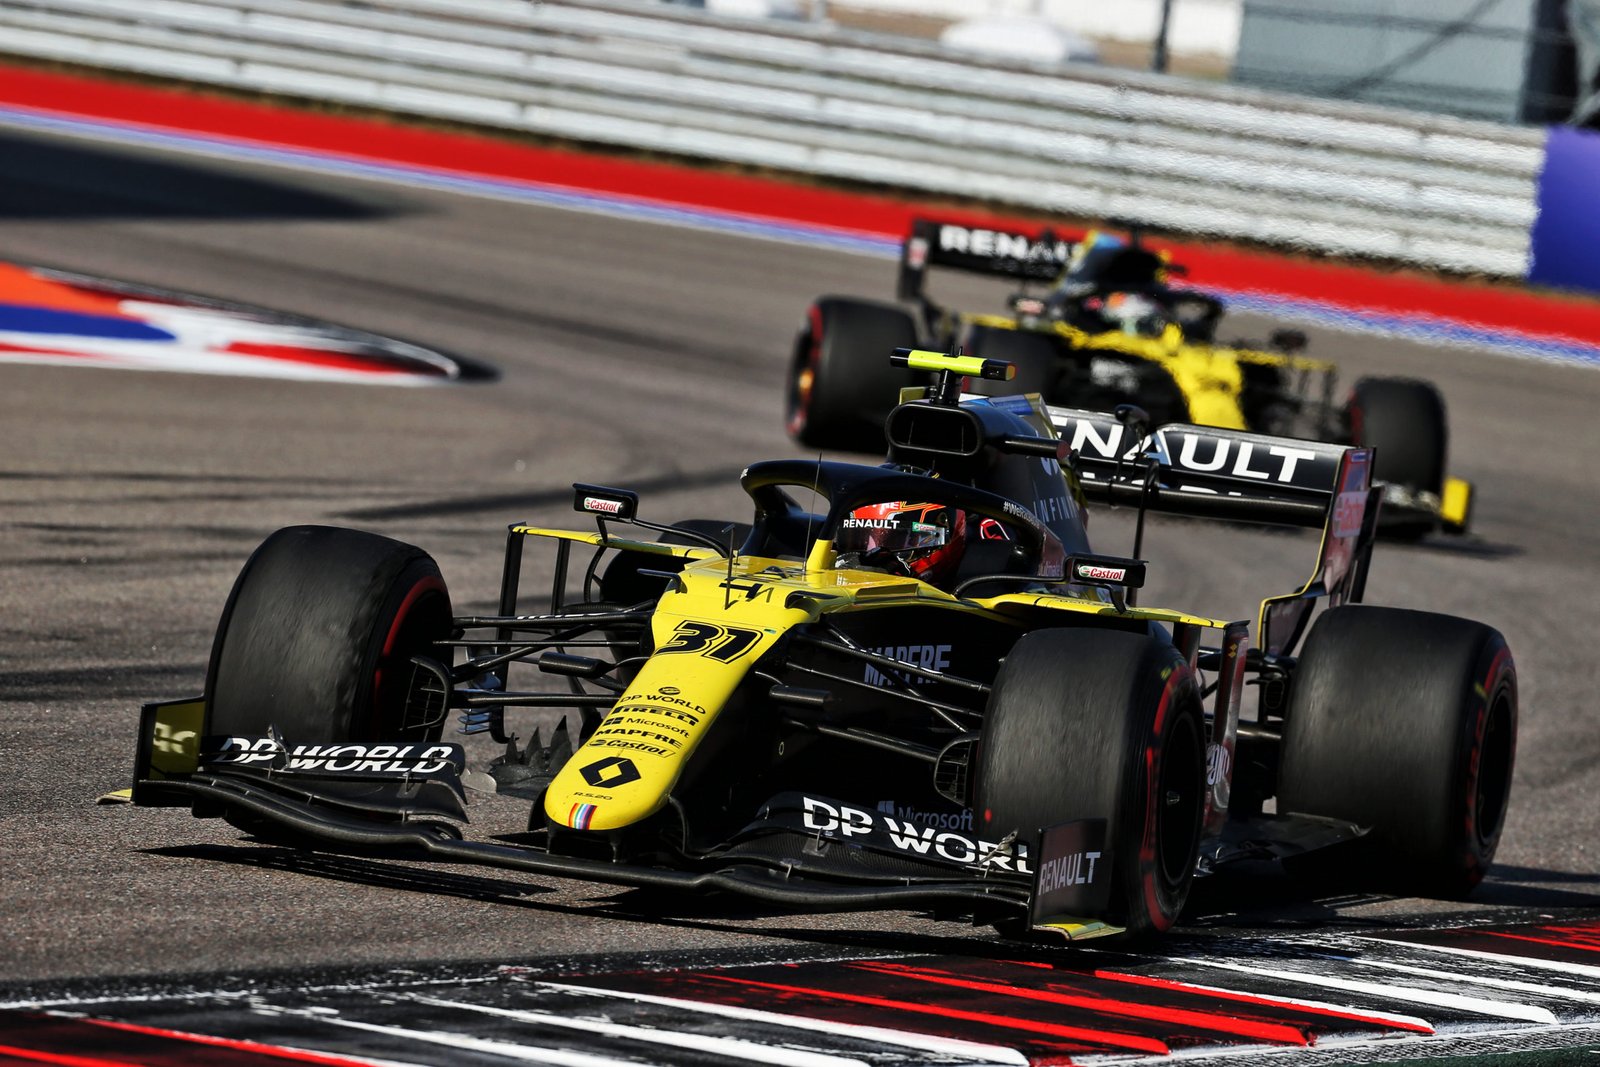 Esteban Ocon e Daniel Ricciardo se enfrentam em GP da Rússia. Australiano foi punido pela ultrapassagem realizada no companheiro de equipe - Foto: Renault F1 Sports